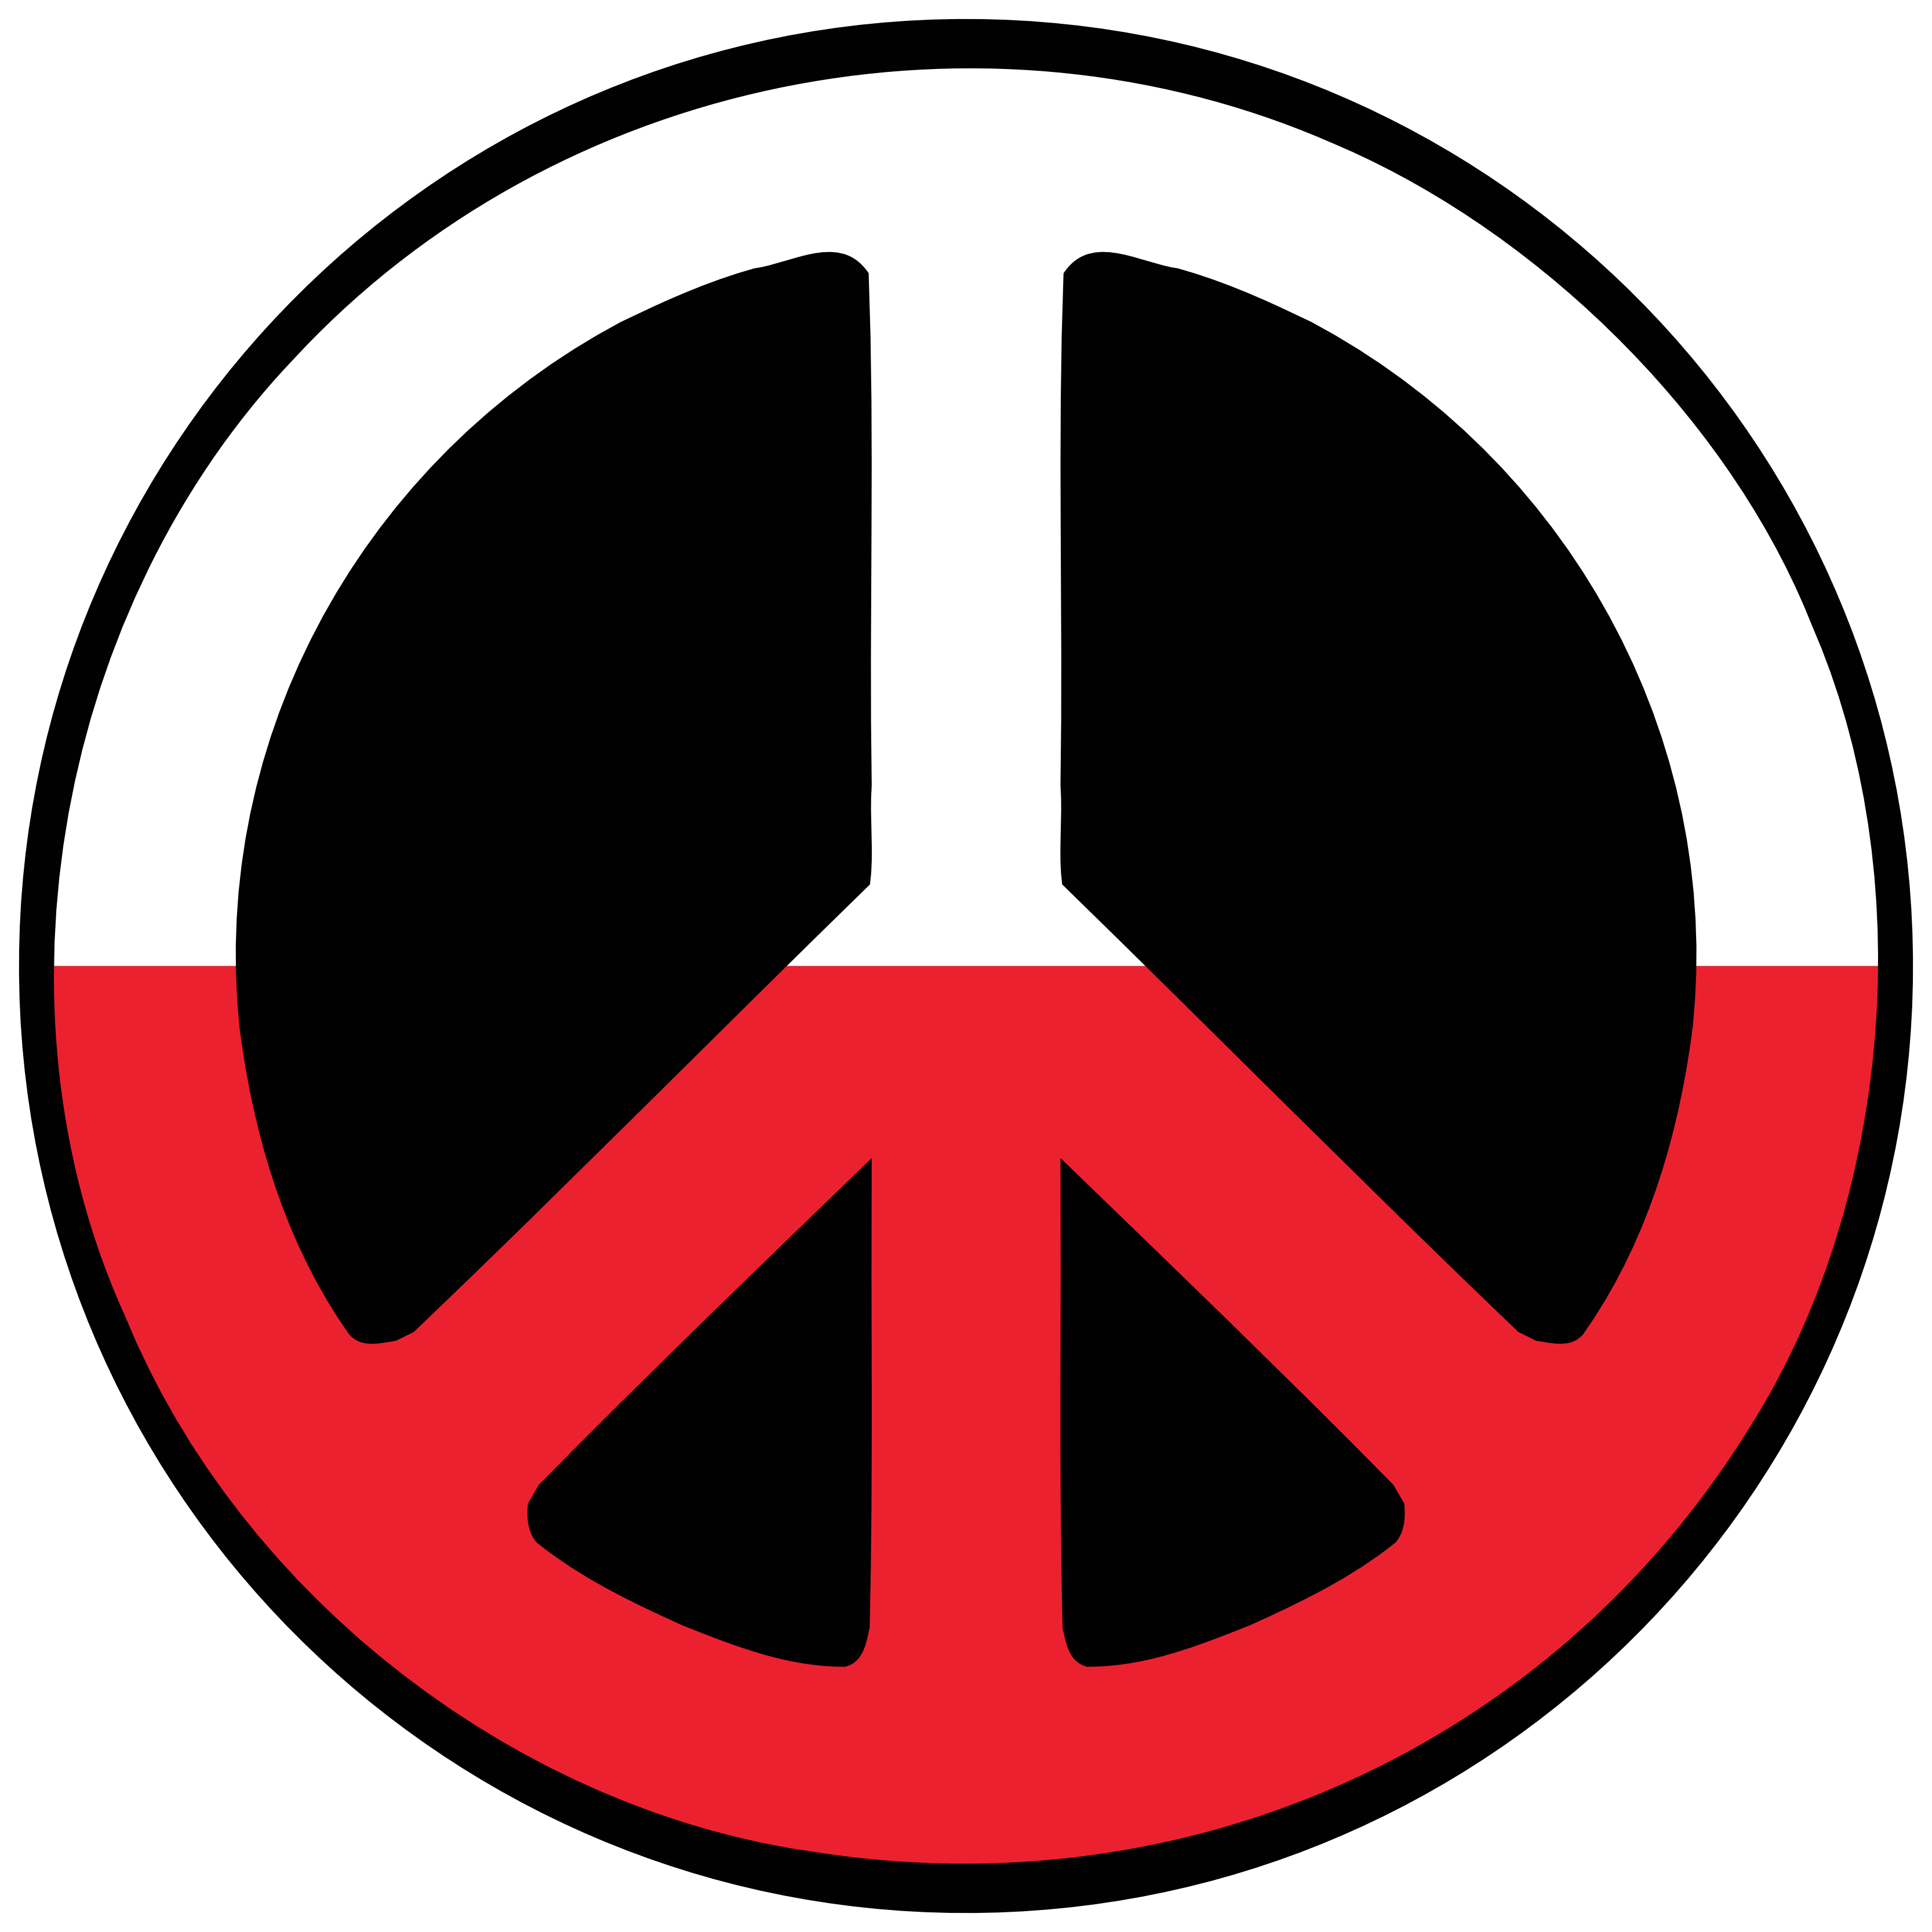 Poland Peace Symbol Flag 4 Peace Flags Peace Symbol Sign Cnd Logo